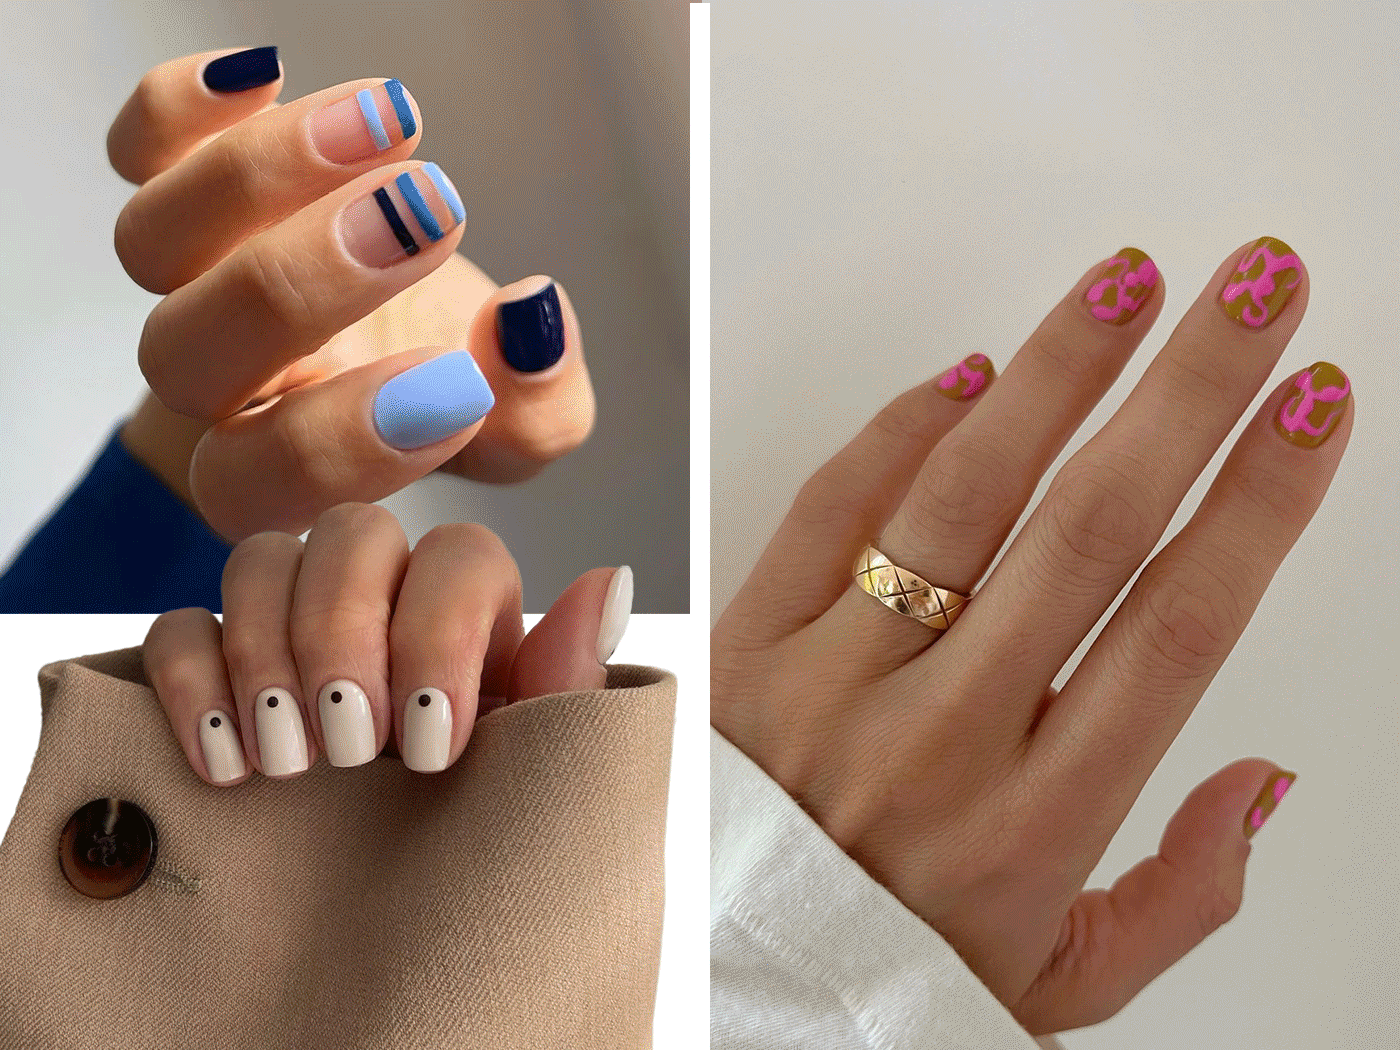 Τα minimal, εντυπωσιακά και σοφιστικέ nail art designs που θα αναδείξουν τα κοντά νύχια σου